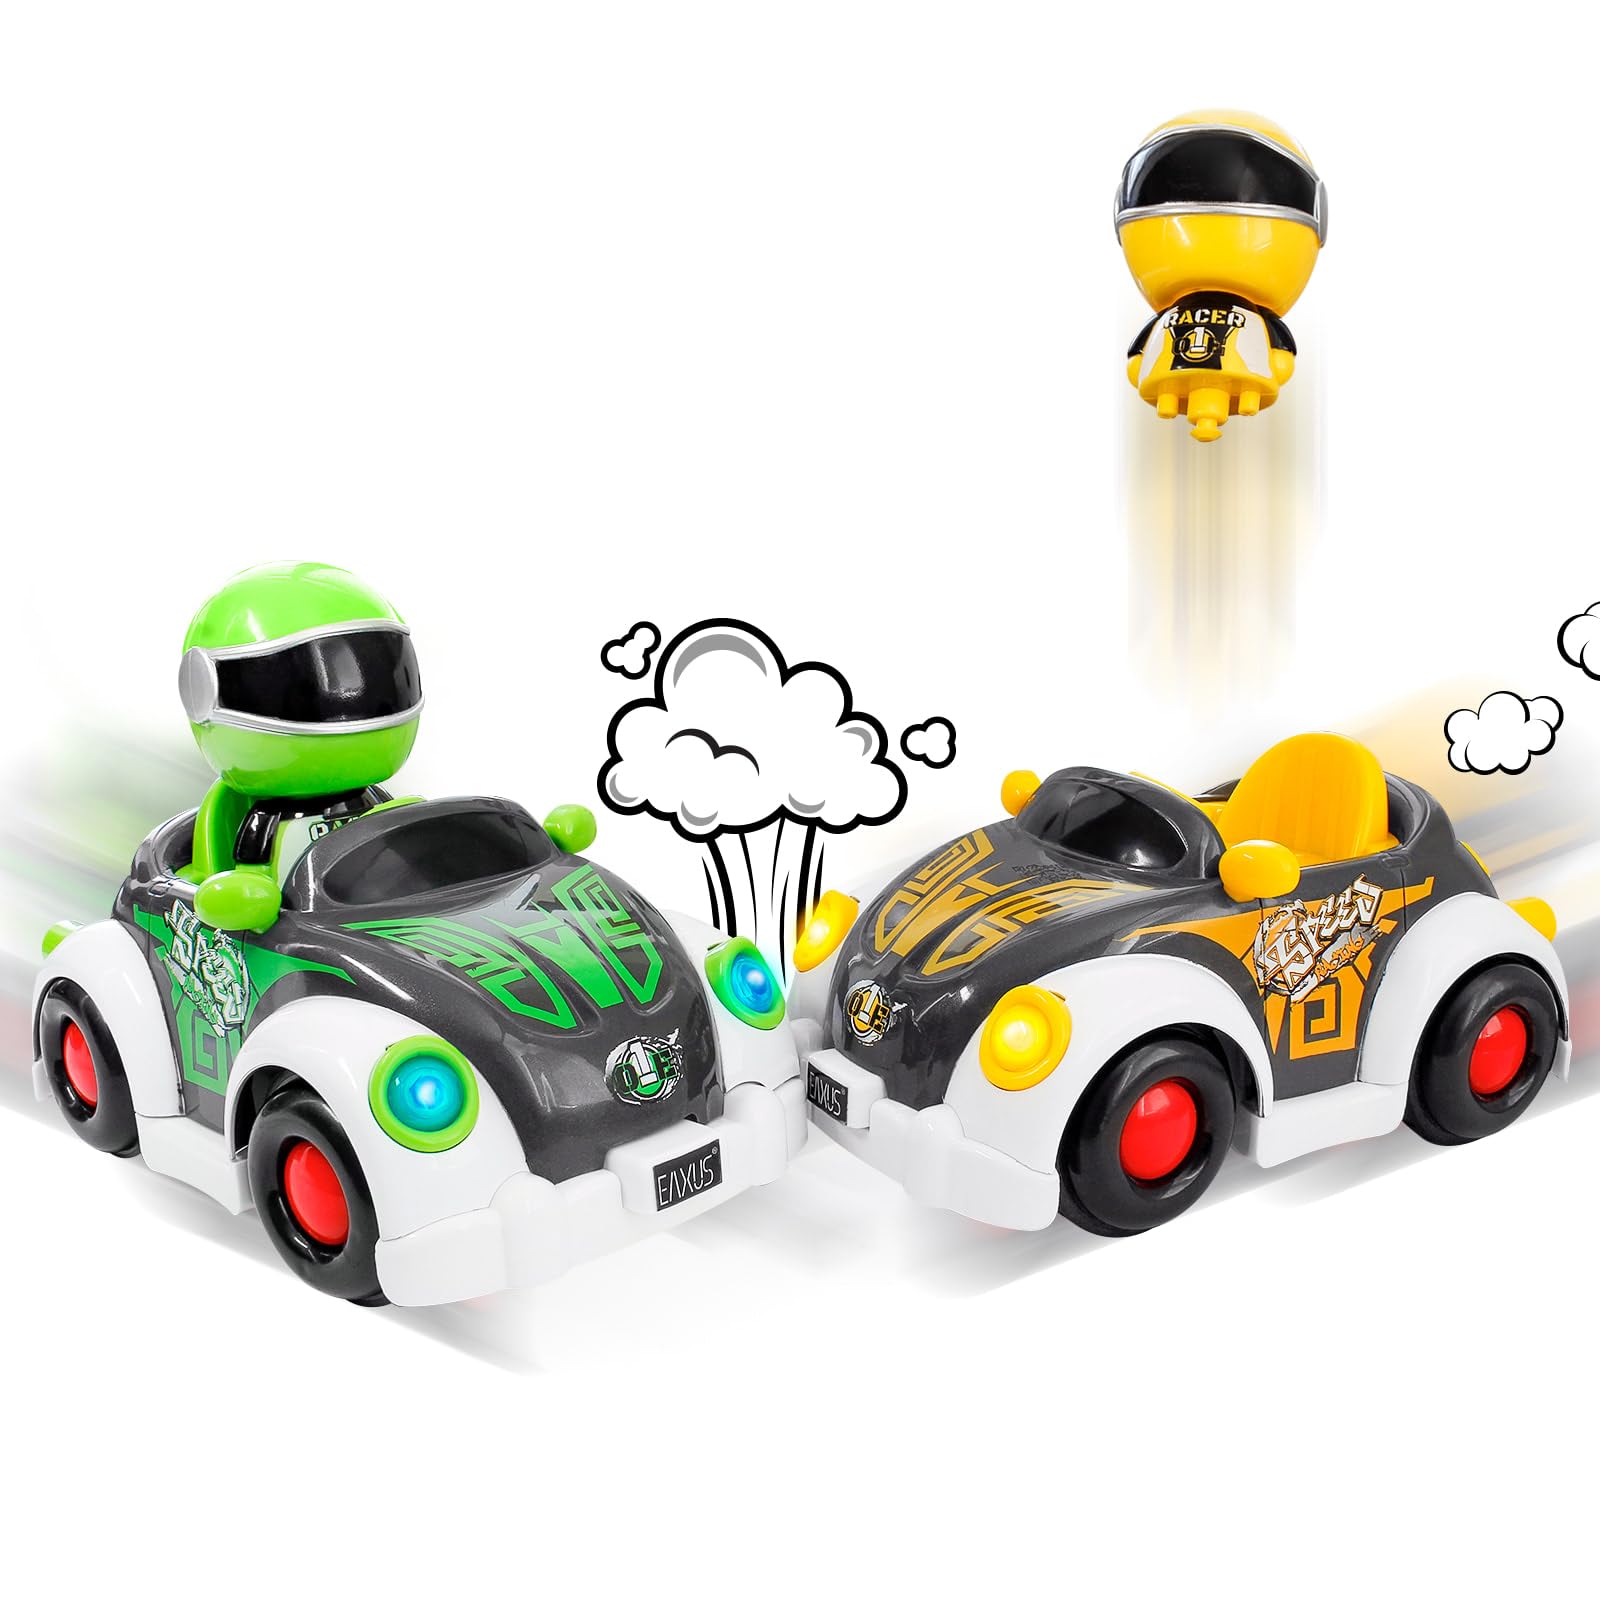 Eaxus® Super Bumper Car - 2X Stunt Kinder Crash Spielzeug Auto für 2 Spieler, Gelb & Grün